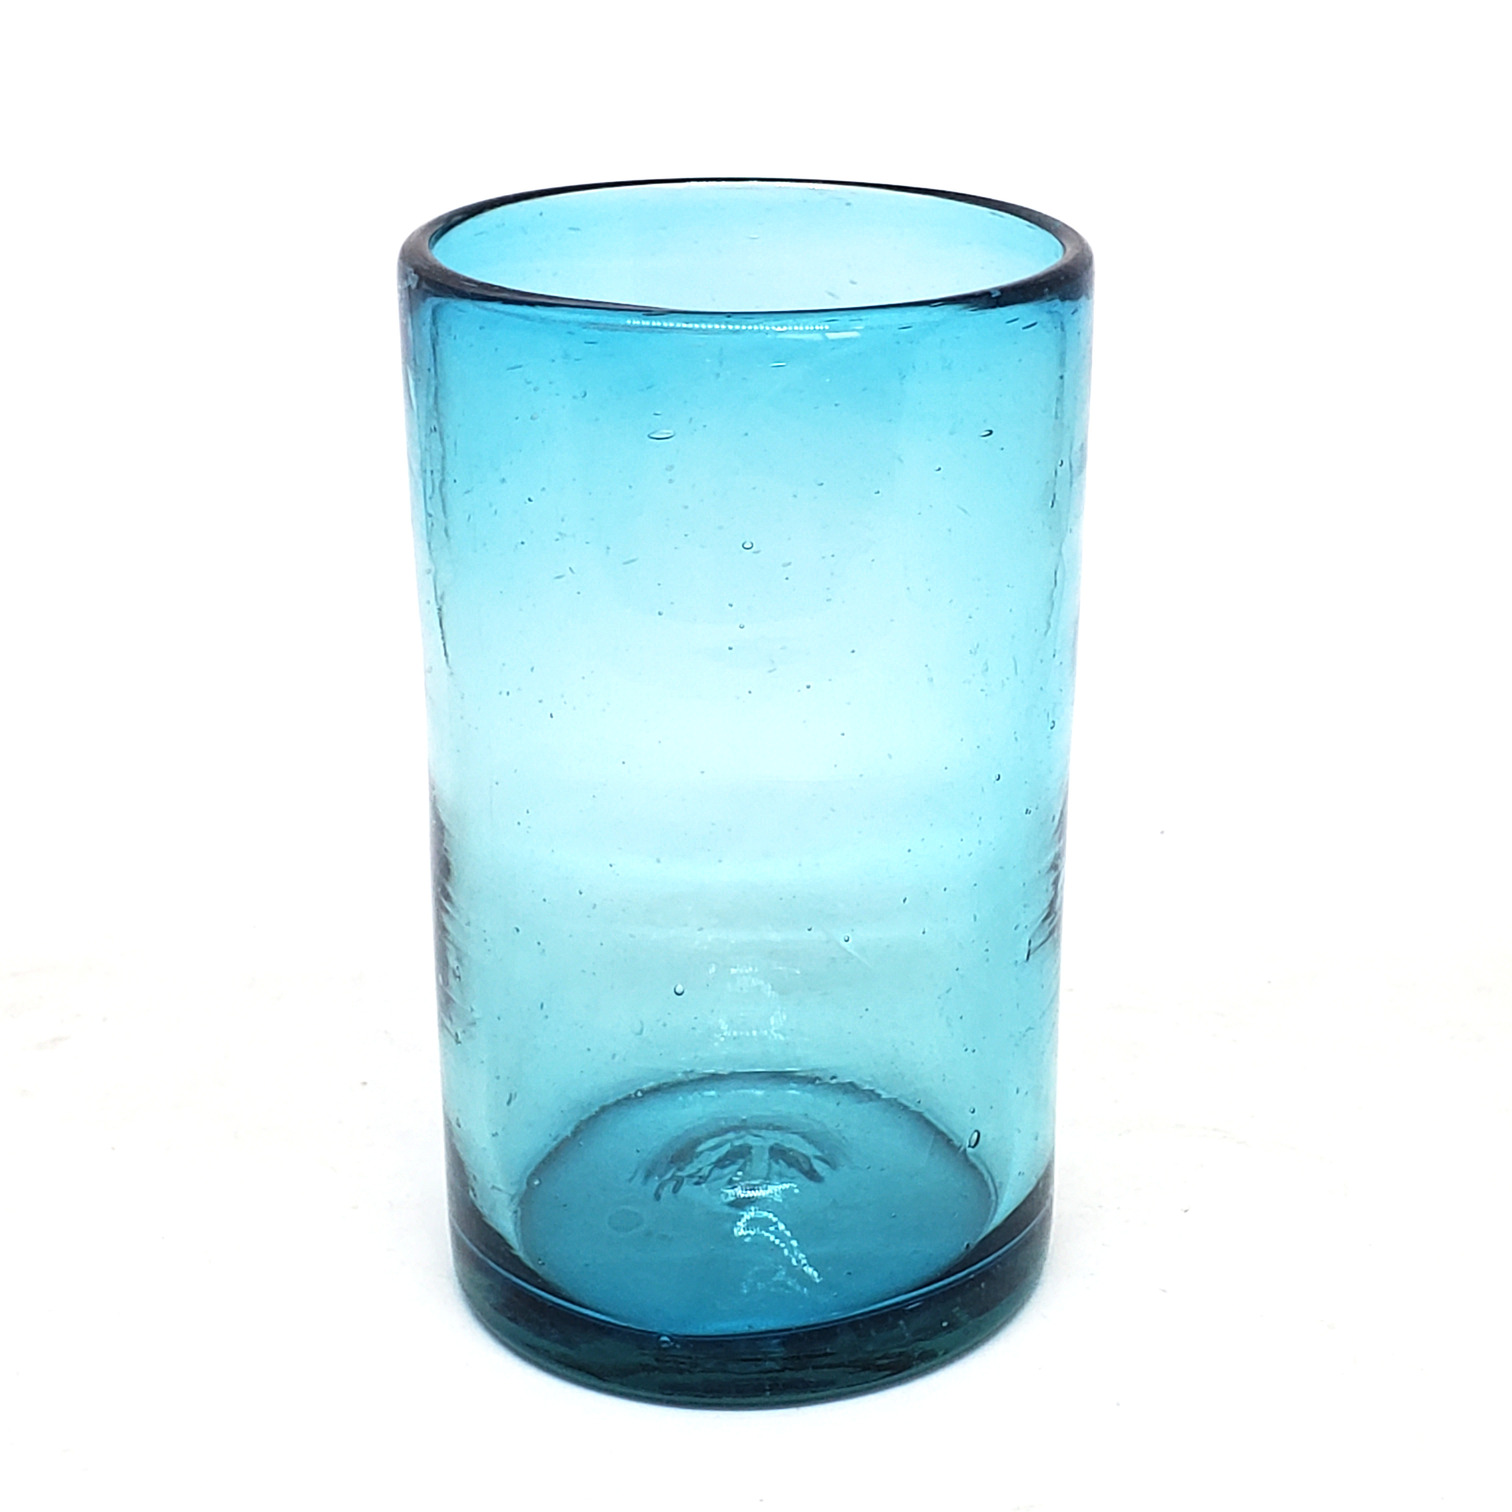 Ofertas / Juego de 6 vasos grandes color azul aqua / �stos artesanales vasos le dar�n un toque cl�sico a su bebida favorita.